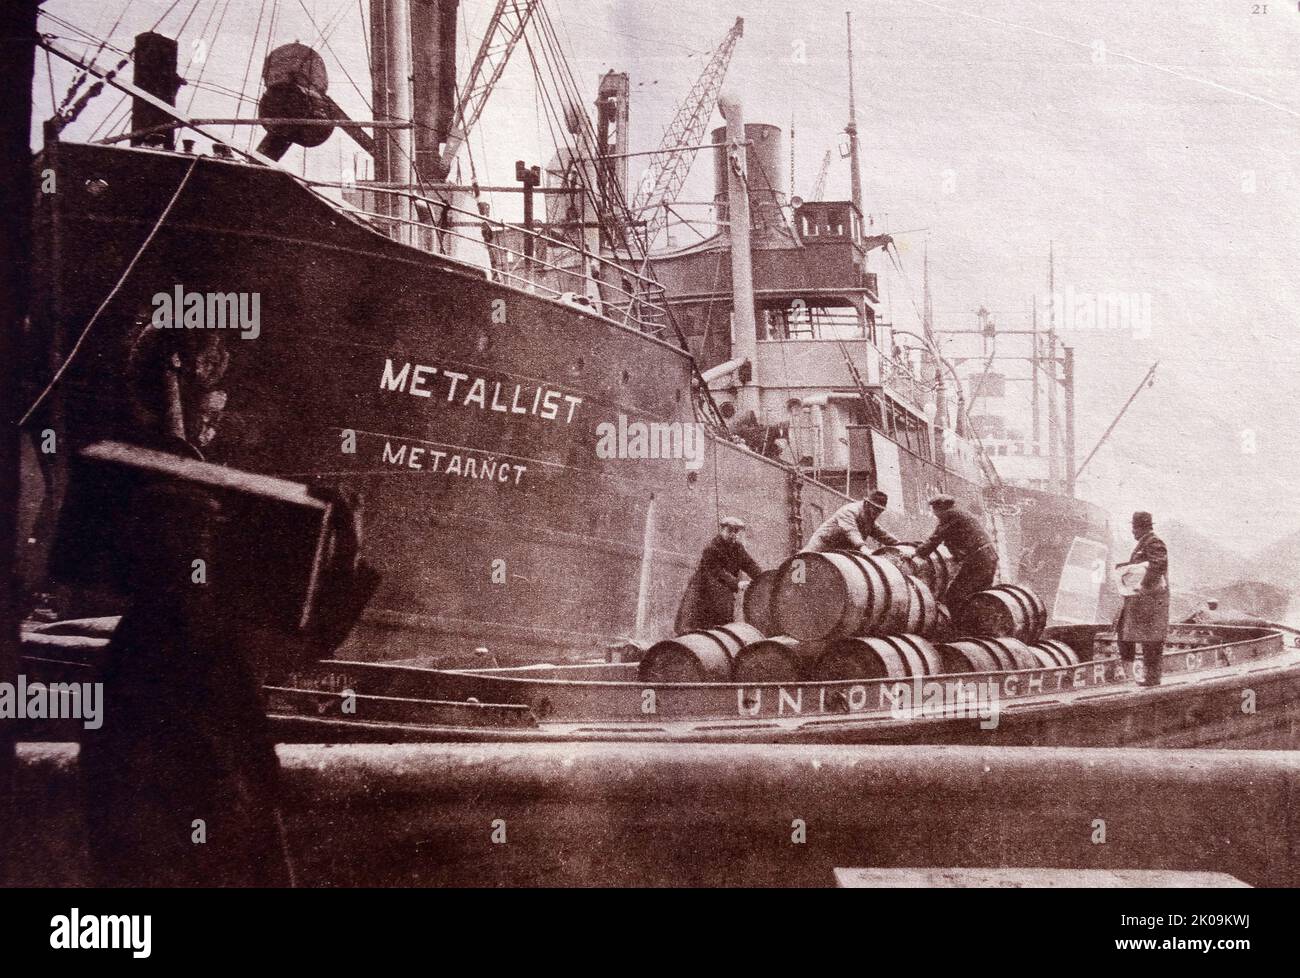 Buque nazi Leander disfrazado de barco ruso y navegando bajo un supuesto nombre de 'Metallista', fue capturado por la Armada británica y llevado a un puerto británico. Foto de stock